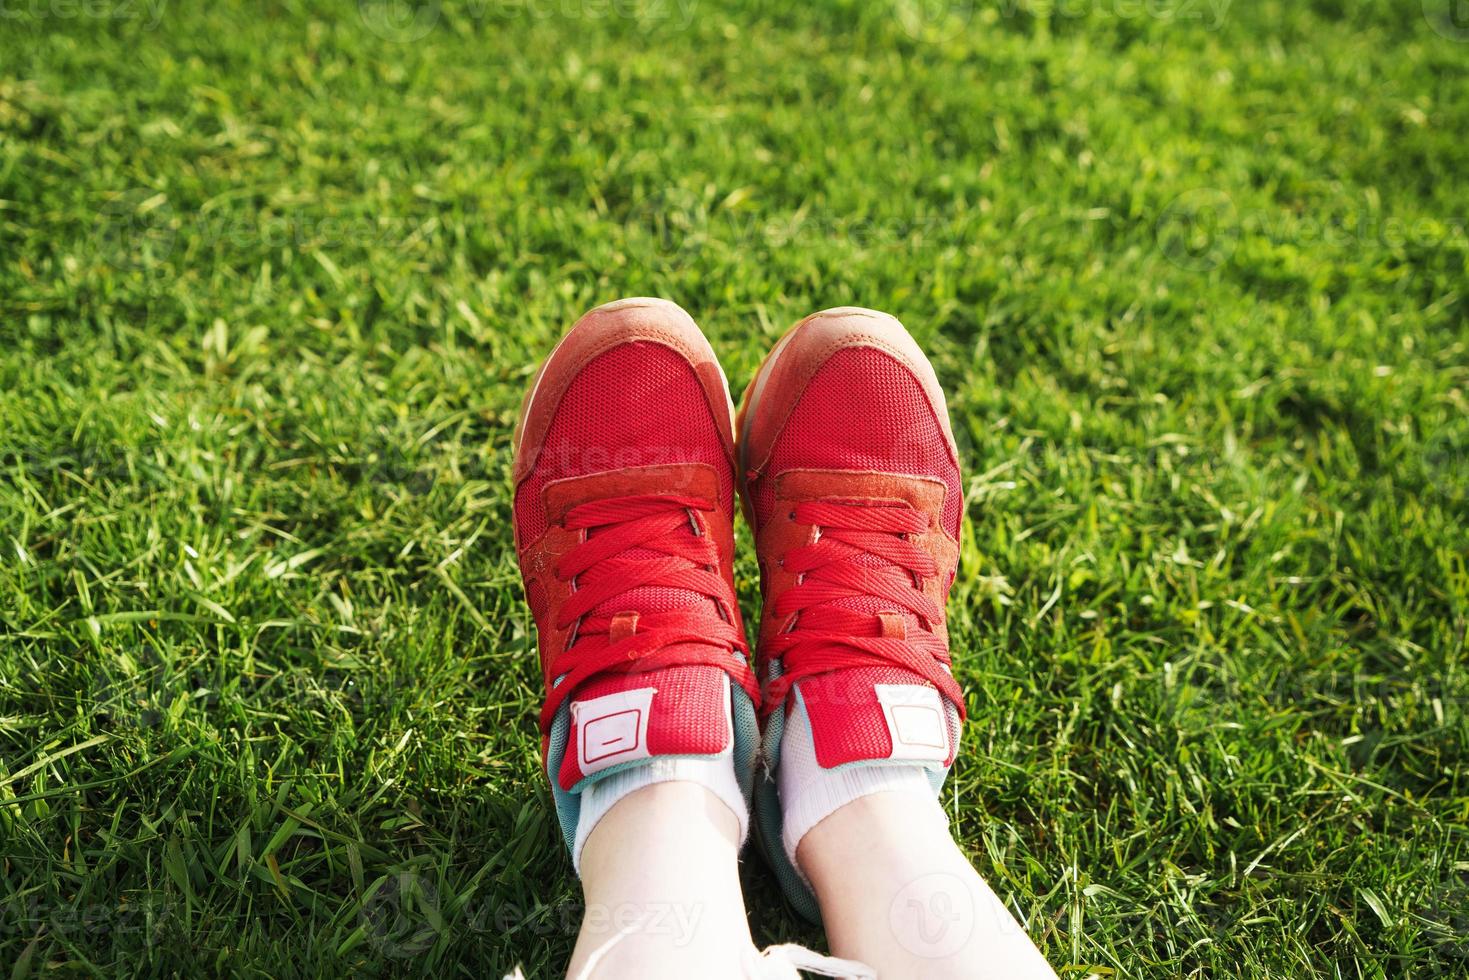 vrouwelijke benen in sneakers op een achtergrond van groen gras foto